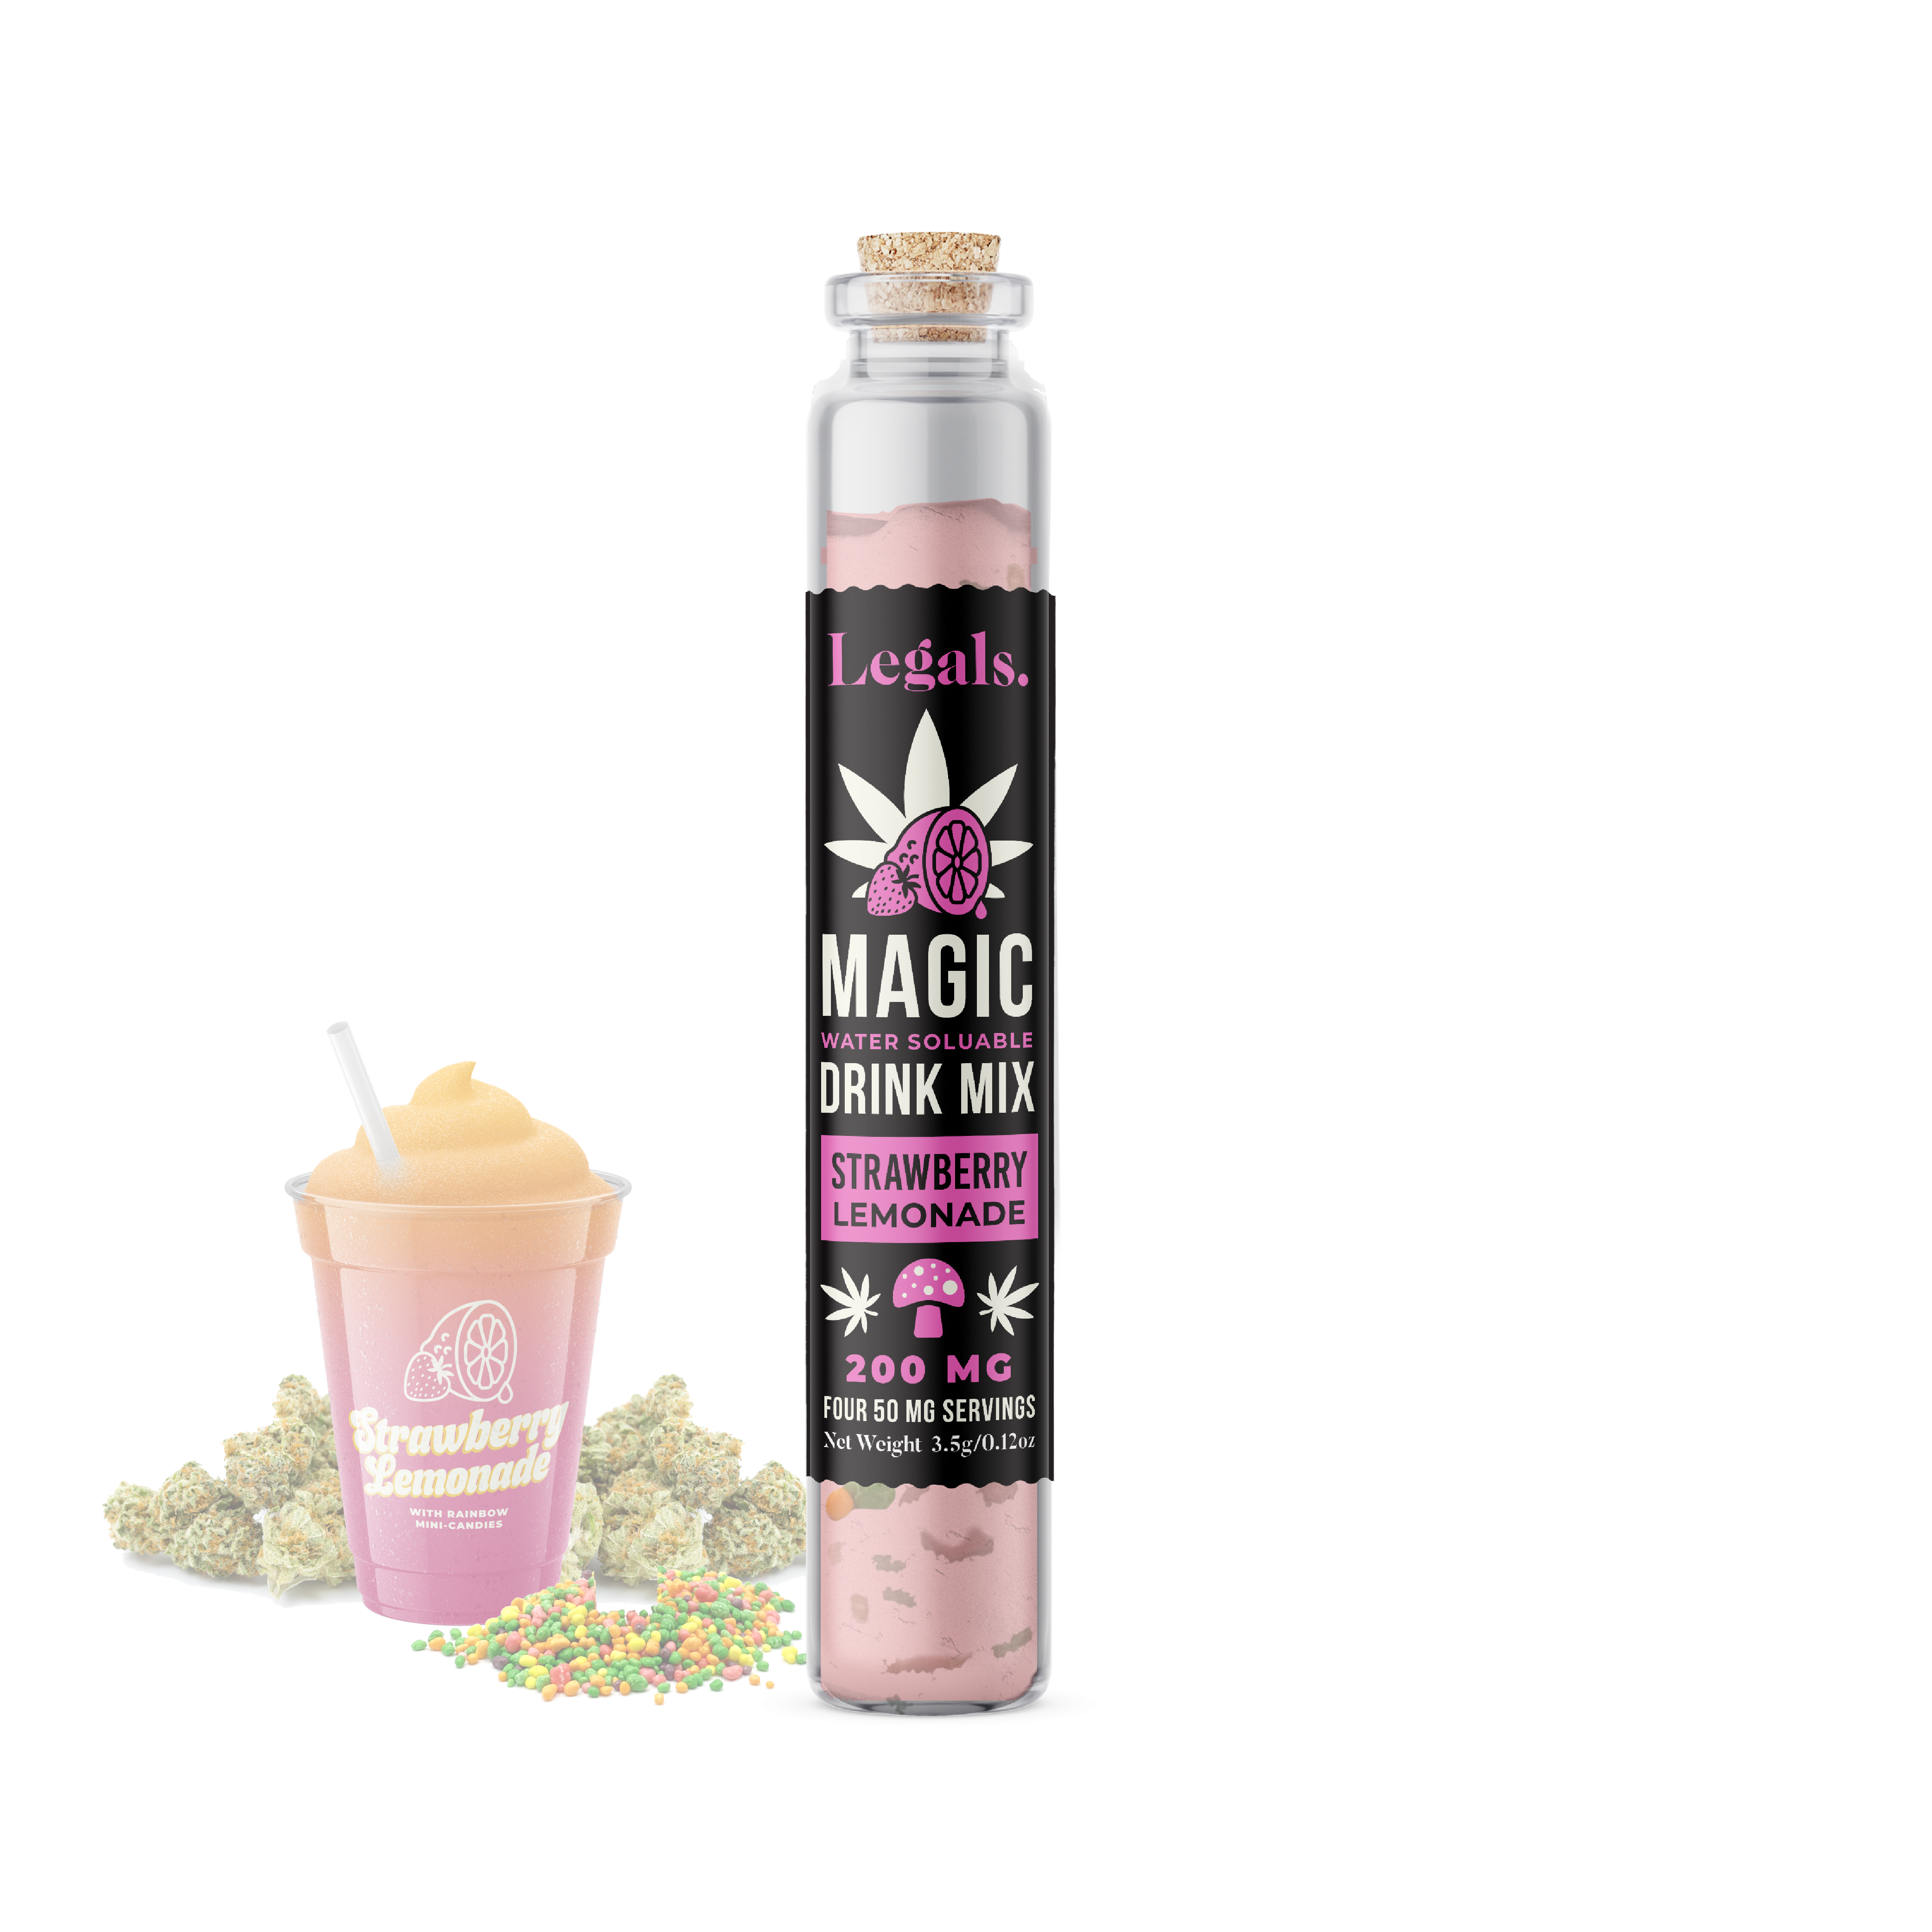 Magic Drink Mix – Legals